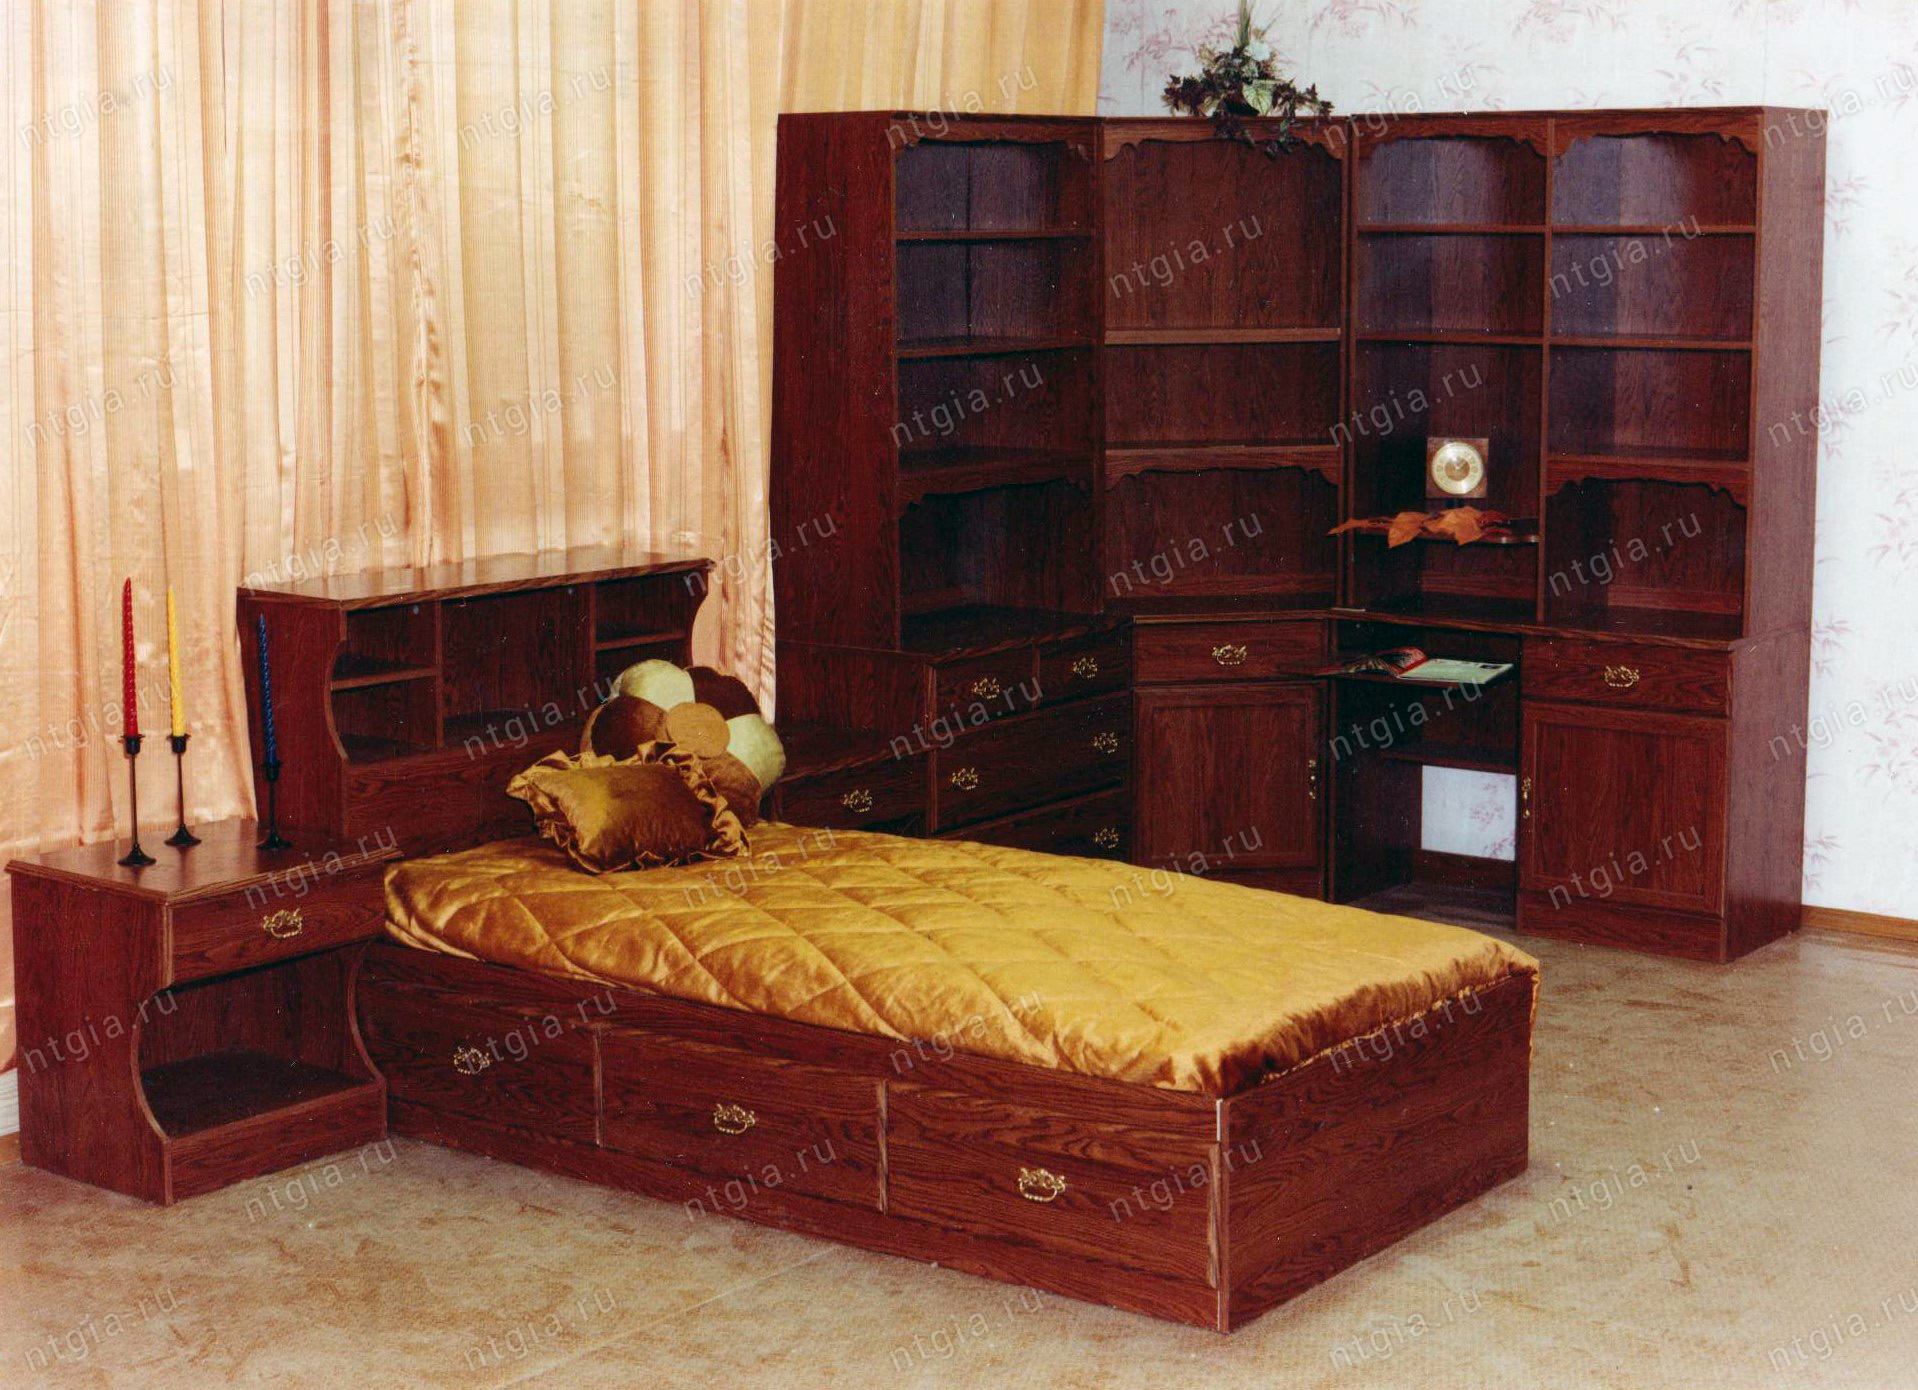 Снимок продукции, выпускаемой Нижнетагильским мебельным комбинатом, 1980 год. (Из личного архива Злобиной Галины Николаевны)